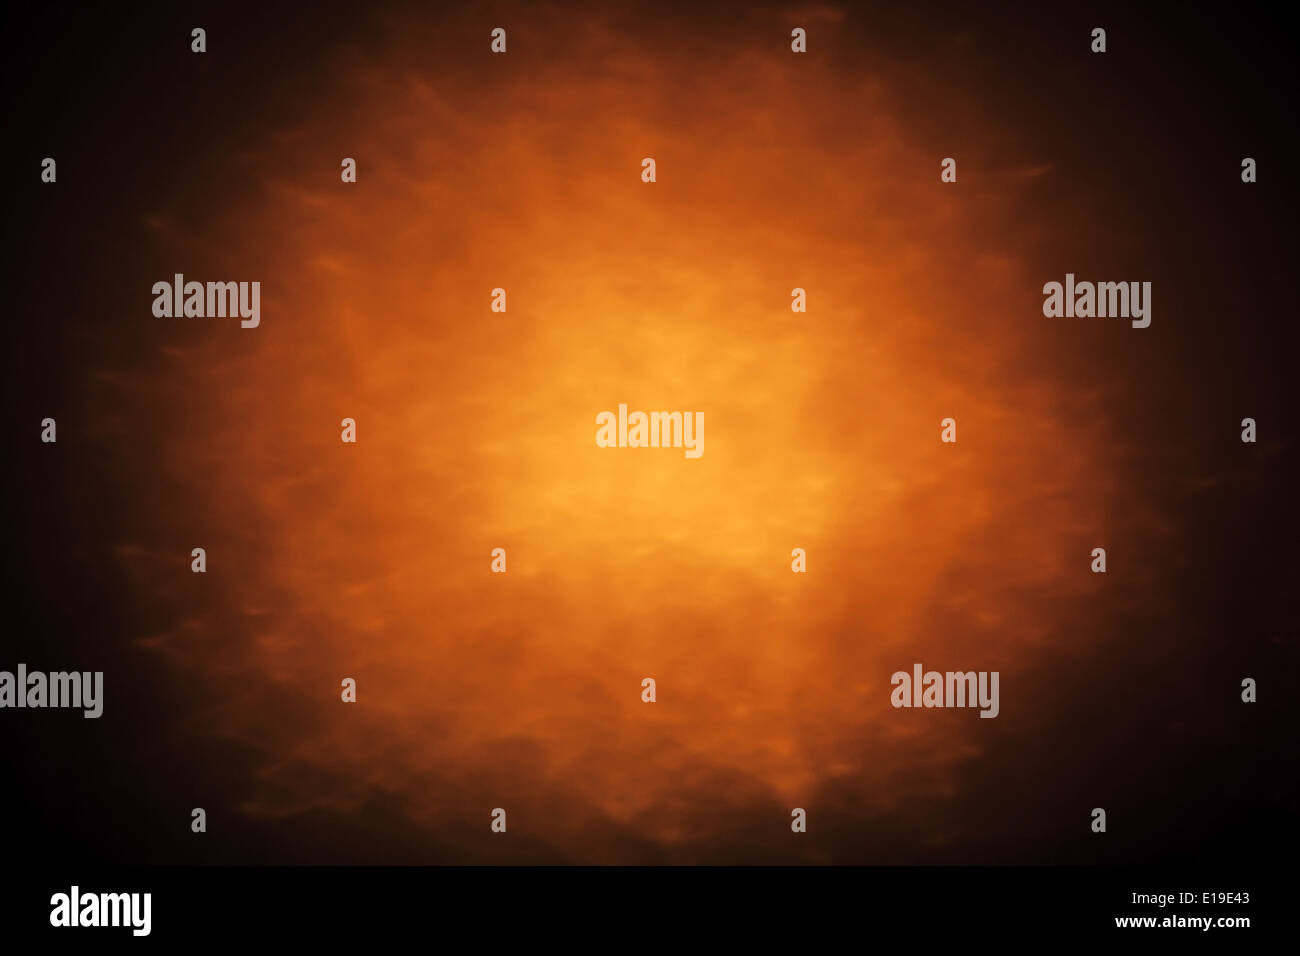 Zusammenfassung Hintergrund mit orange leuchtenden Scheinwerfer Stockfoto